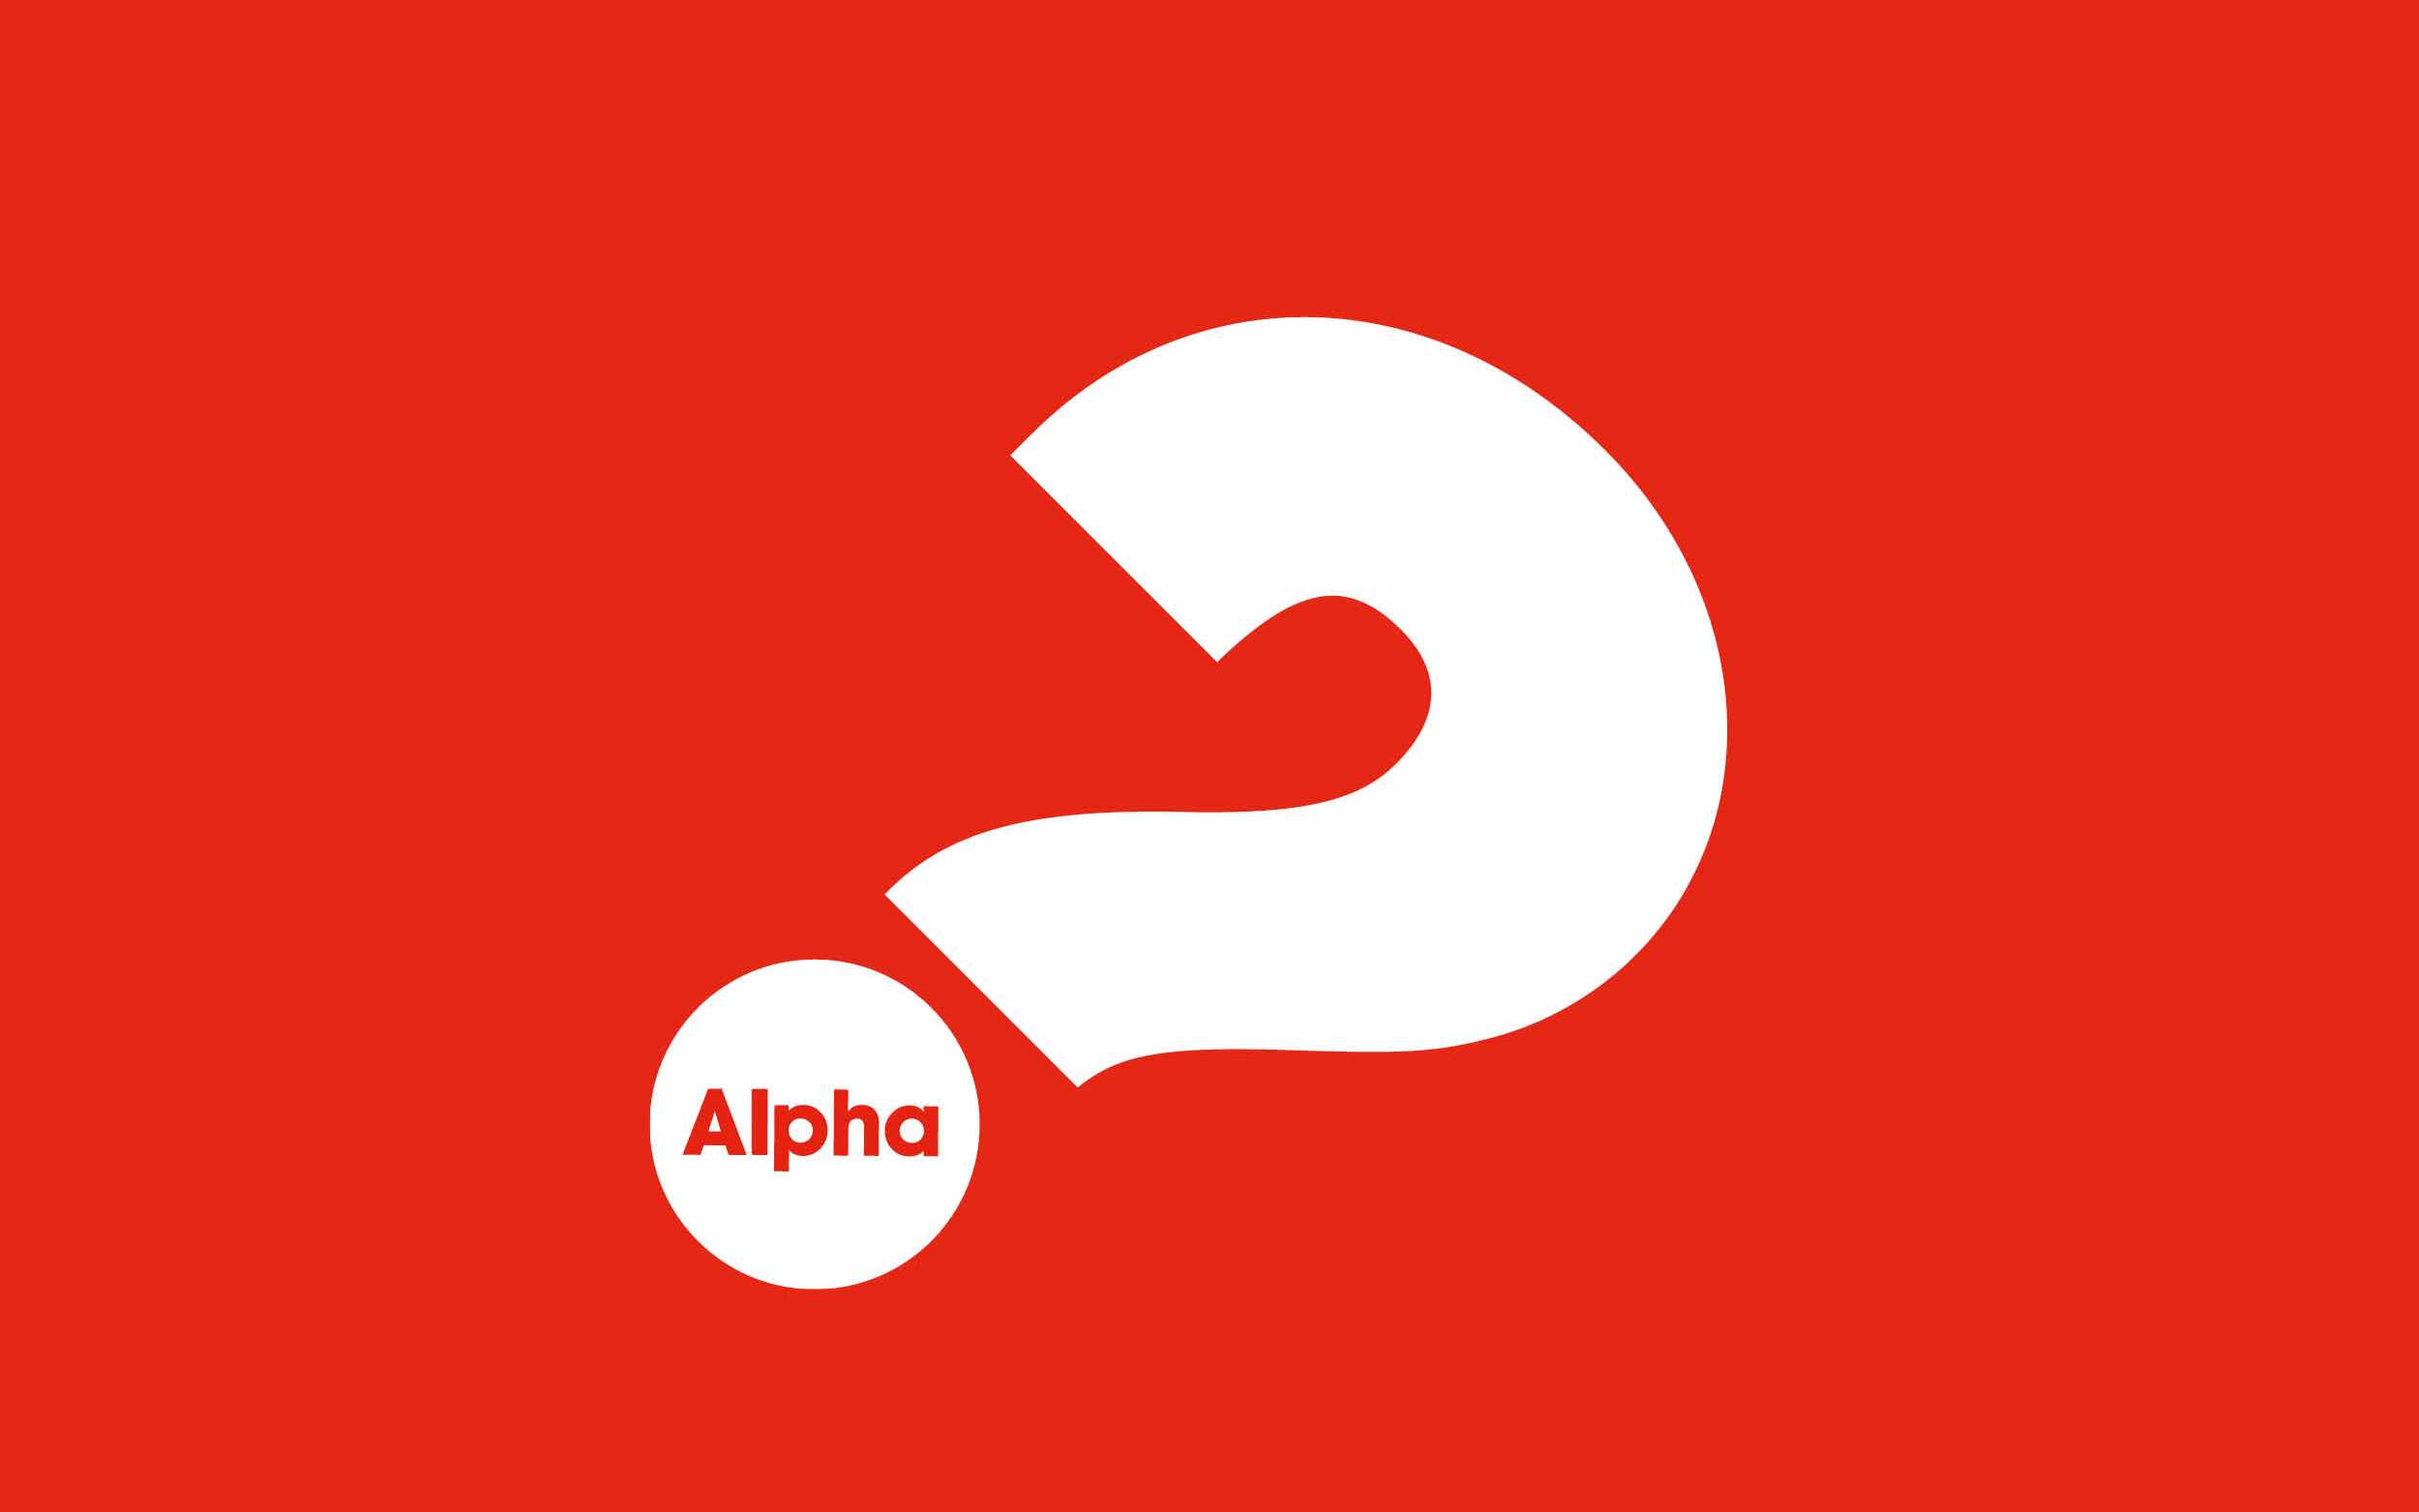 Alpha course logo